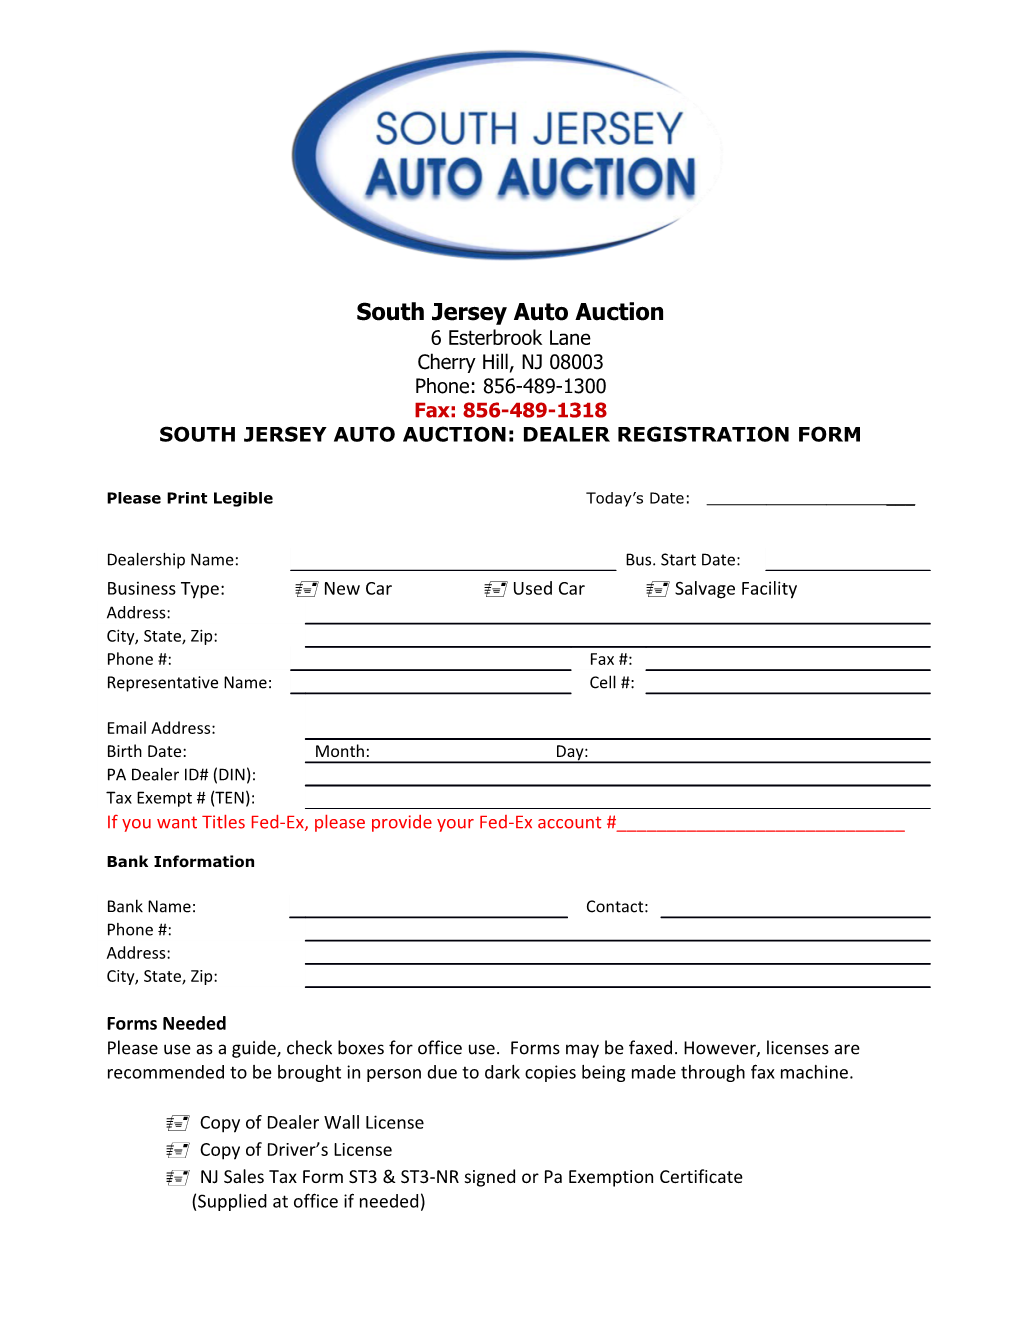 South Jersey Auto Auction: Dealer Registration Form